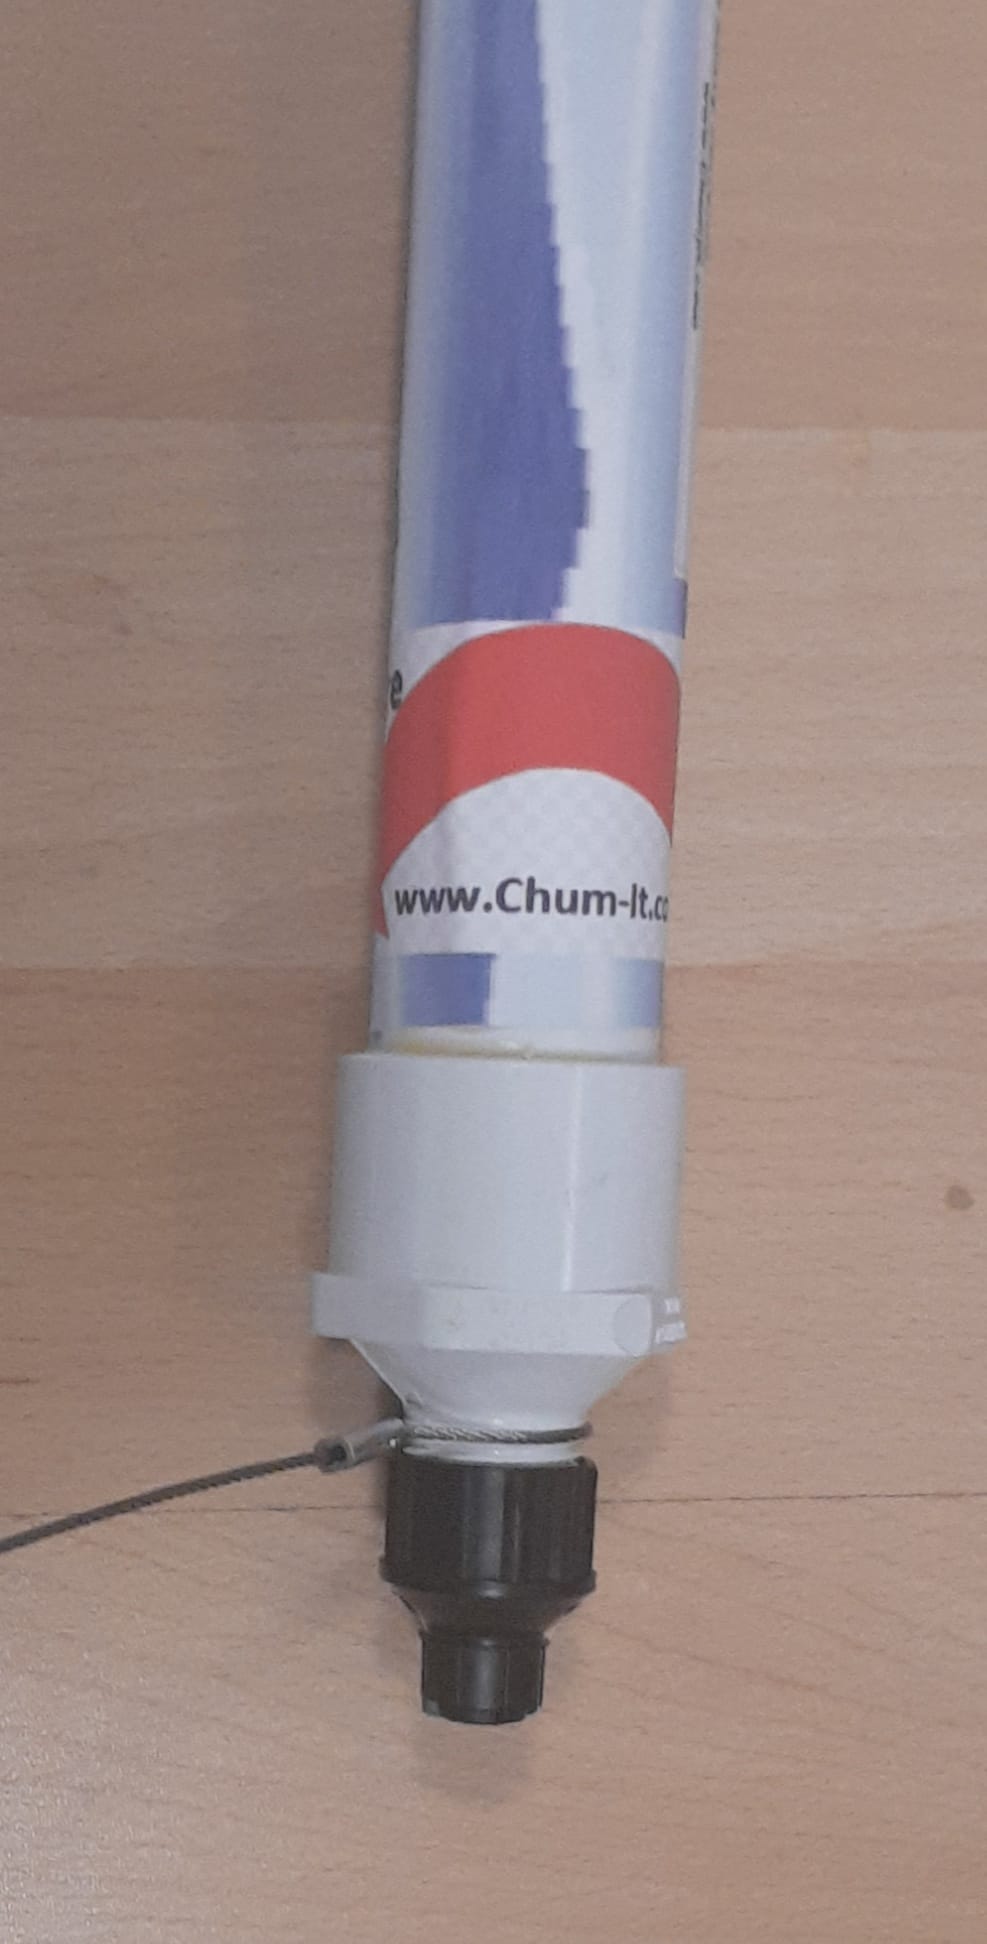 Chum-it adjustable chum slick dripper